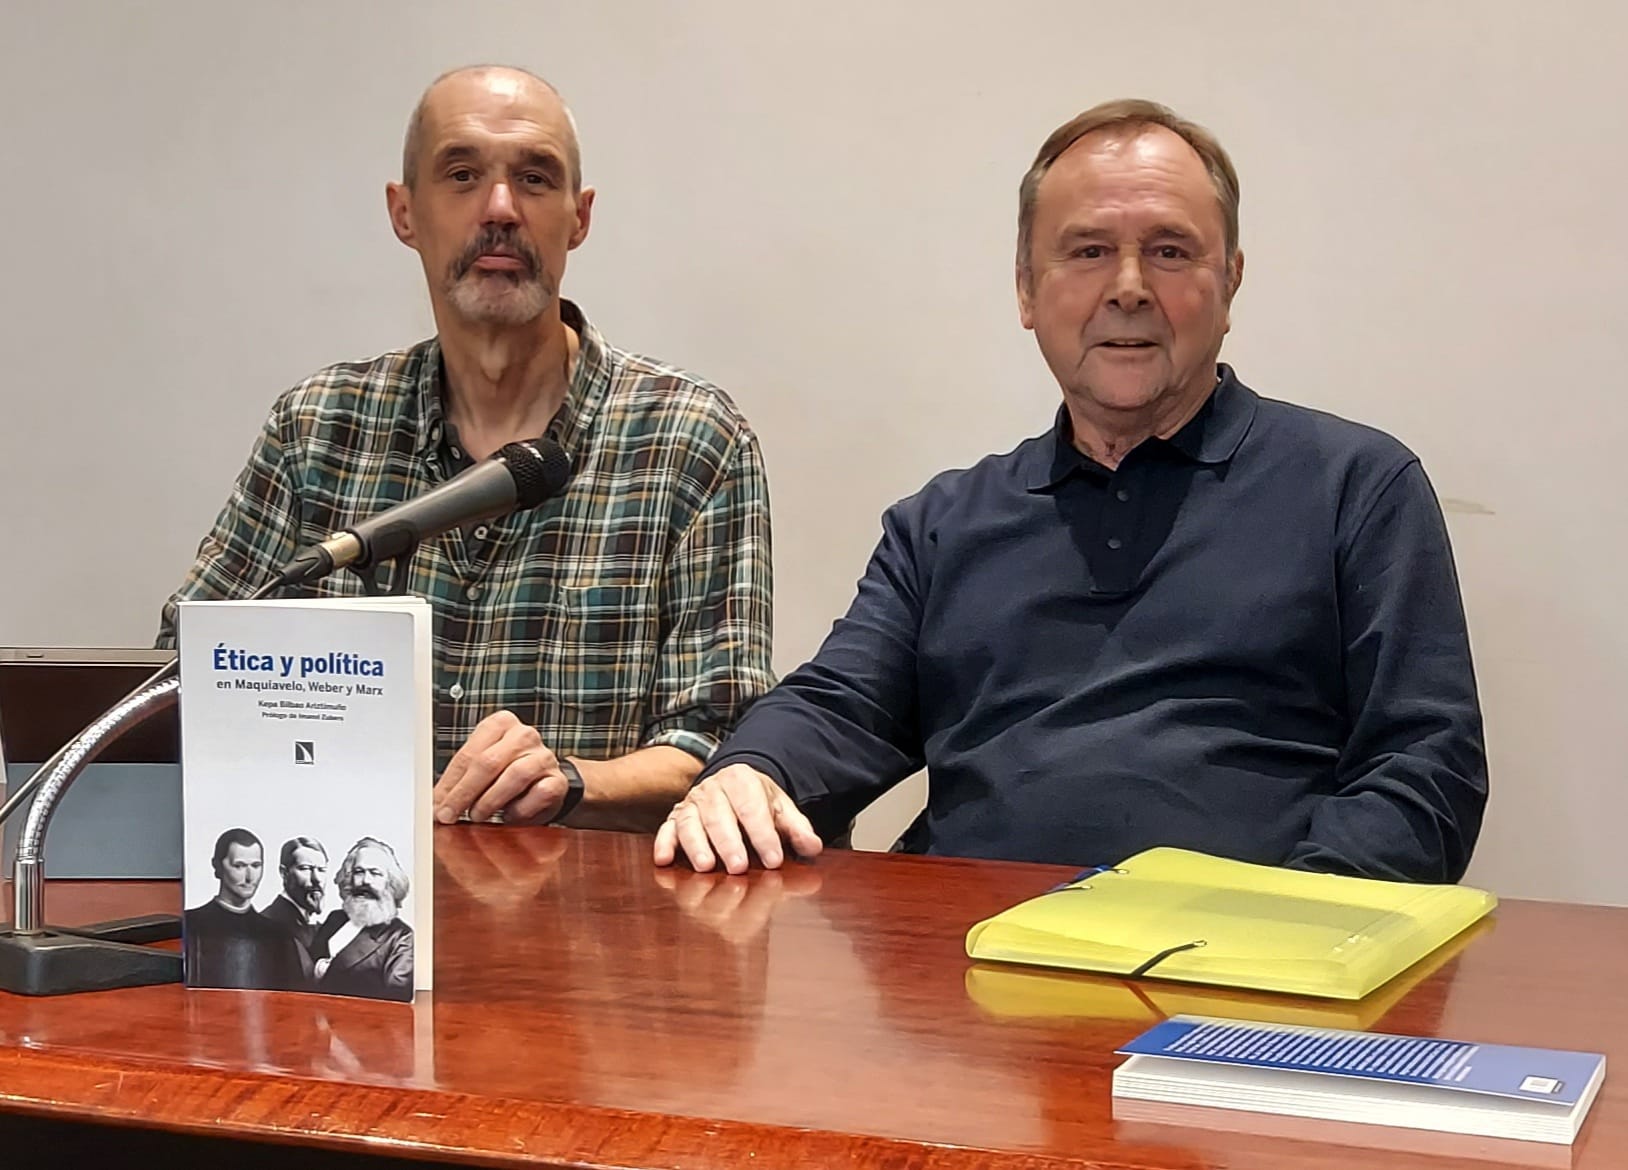 Intervención de Kepa Bilbao Ariztimuño en la presentación/coloquio del libro «Ética y política en Maquiavelo, Weber y Marx»